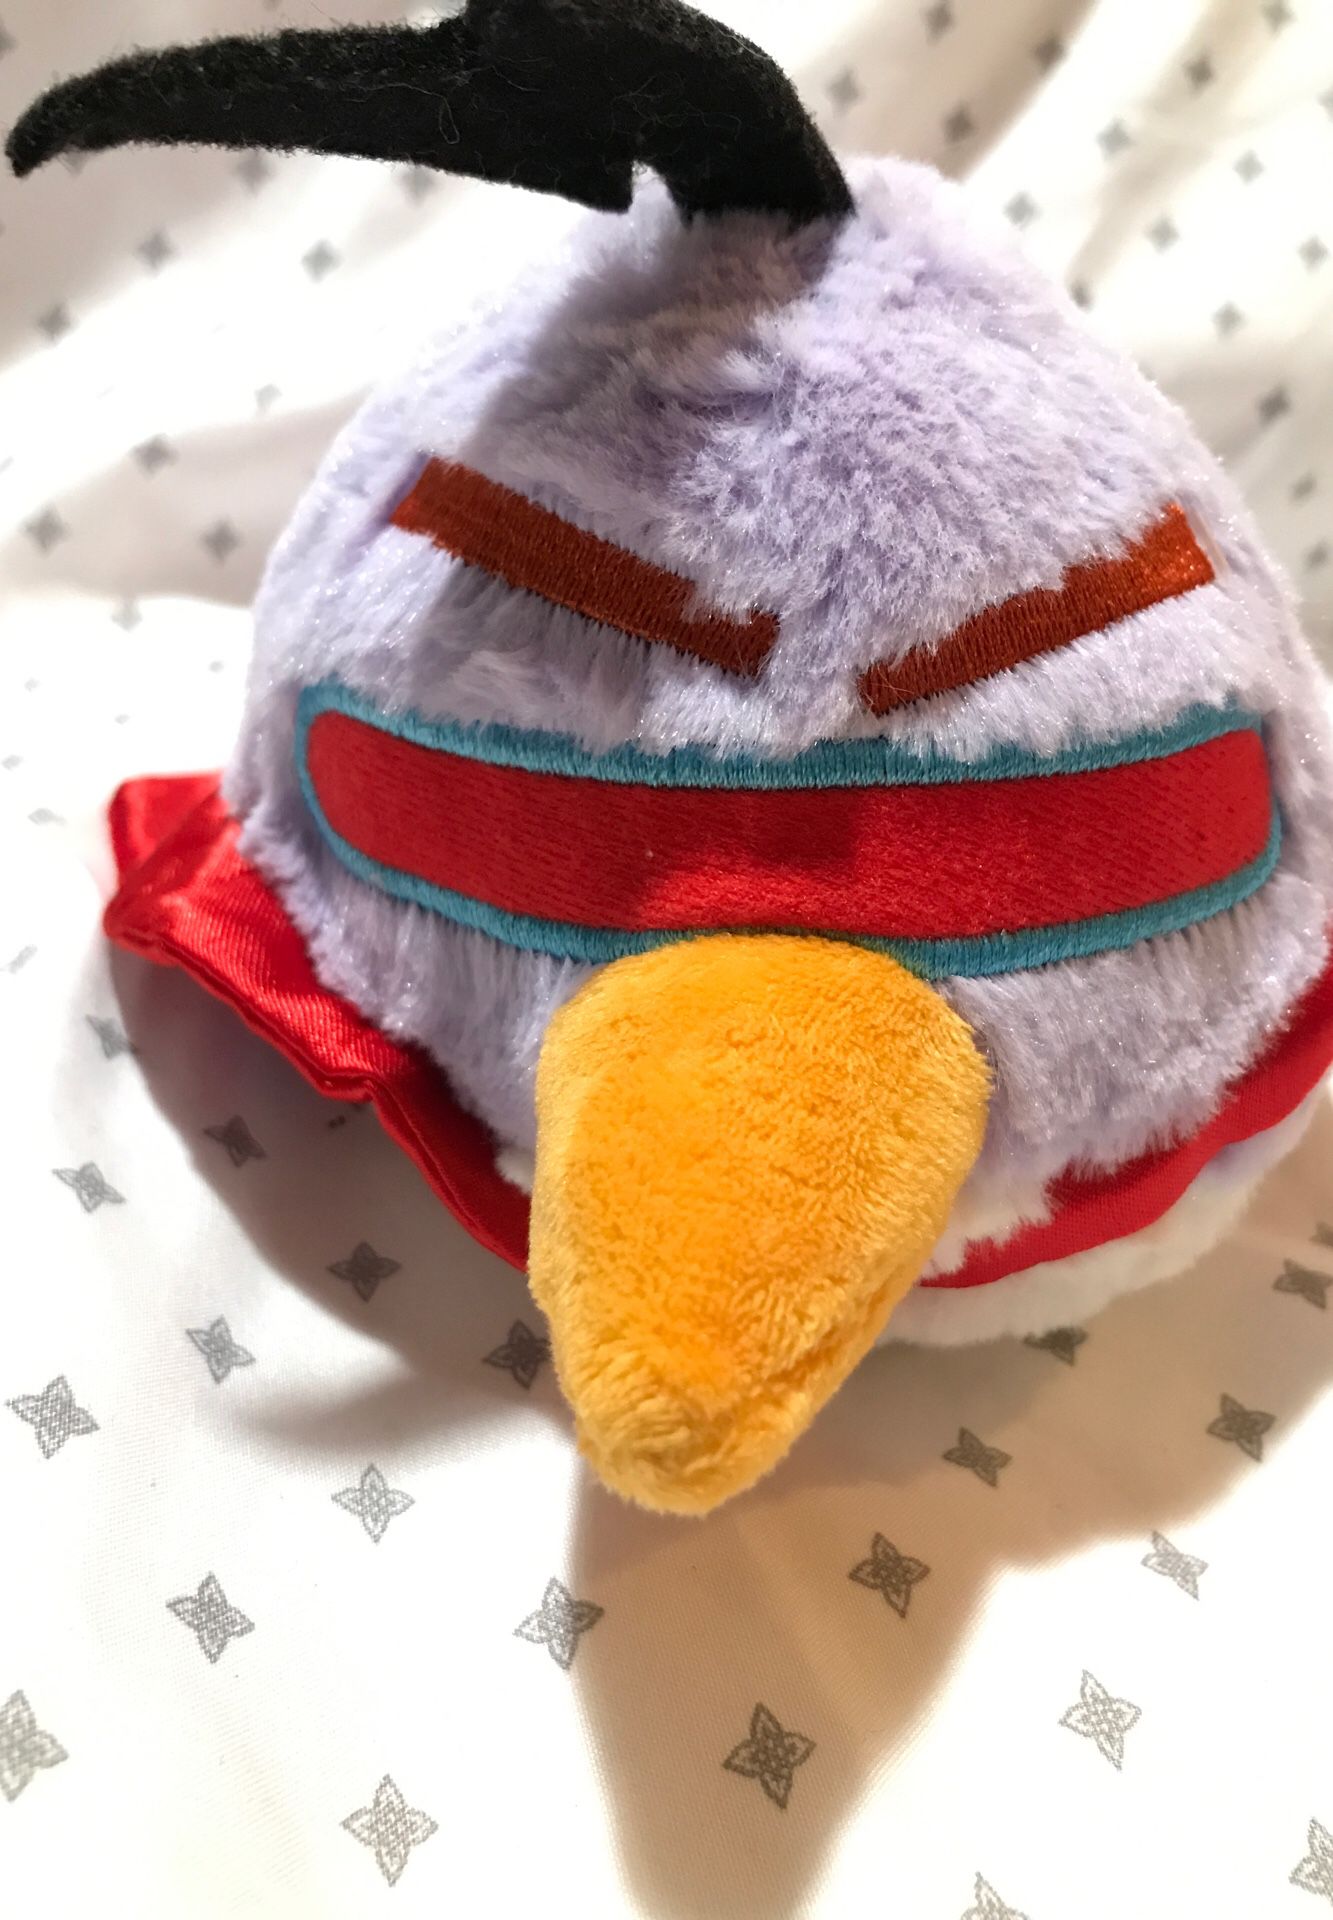 4.5” Angry Bird stuffed animal